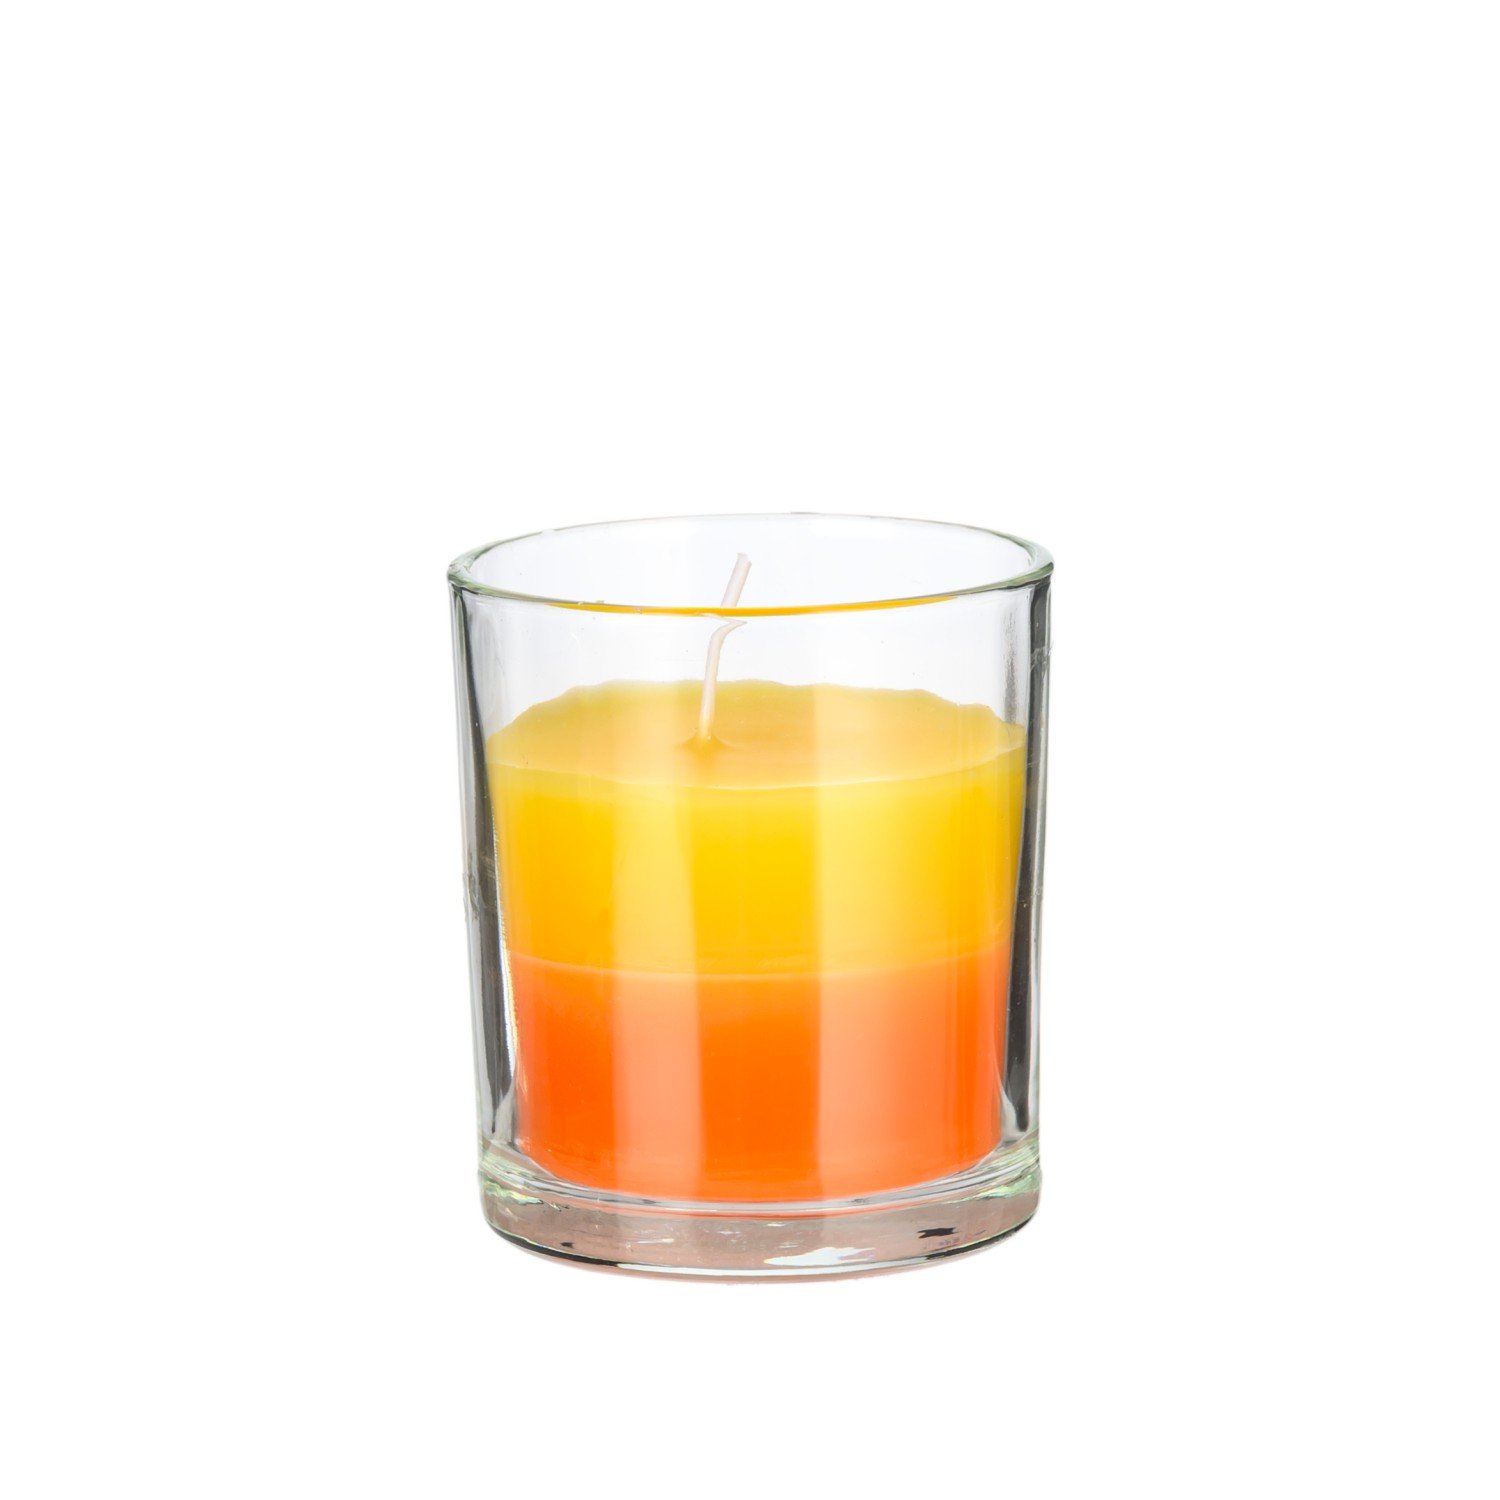 Žvakė stikliniame indelyje, įv. spalvų, 7 x 8 cm